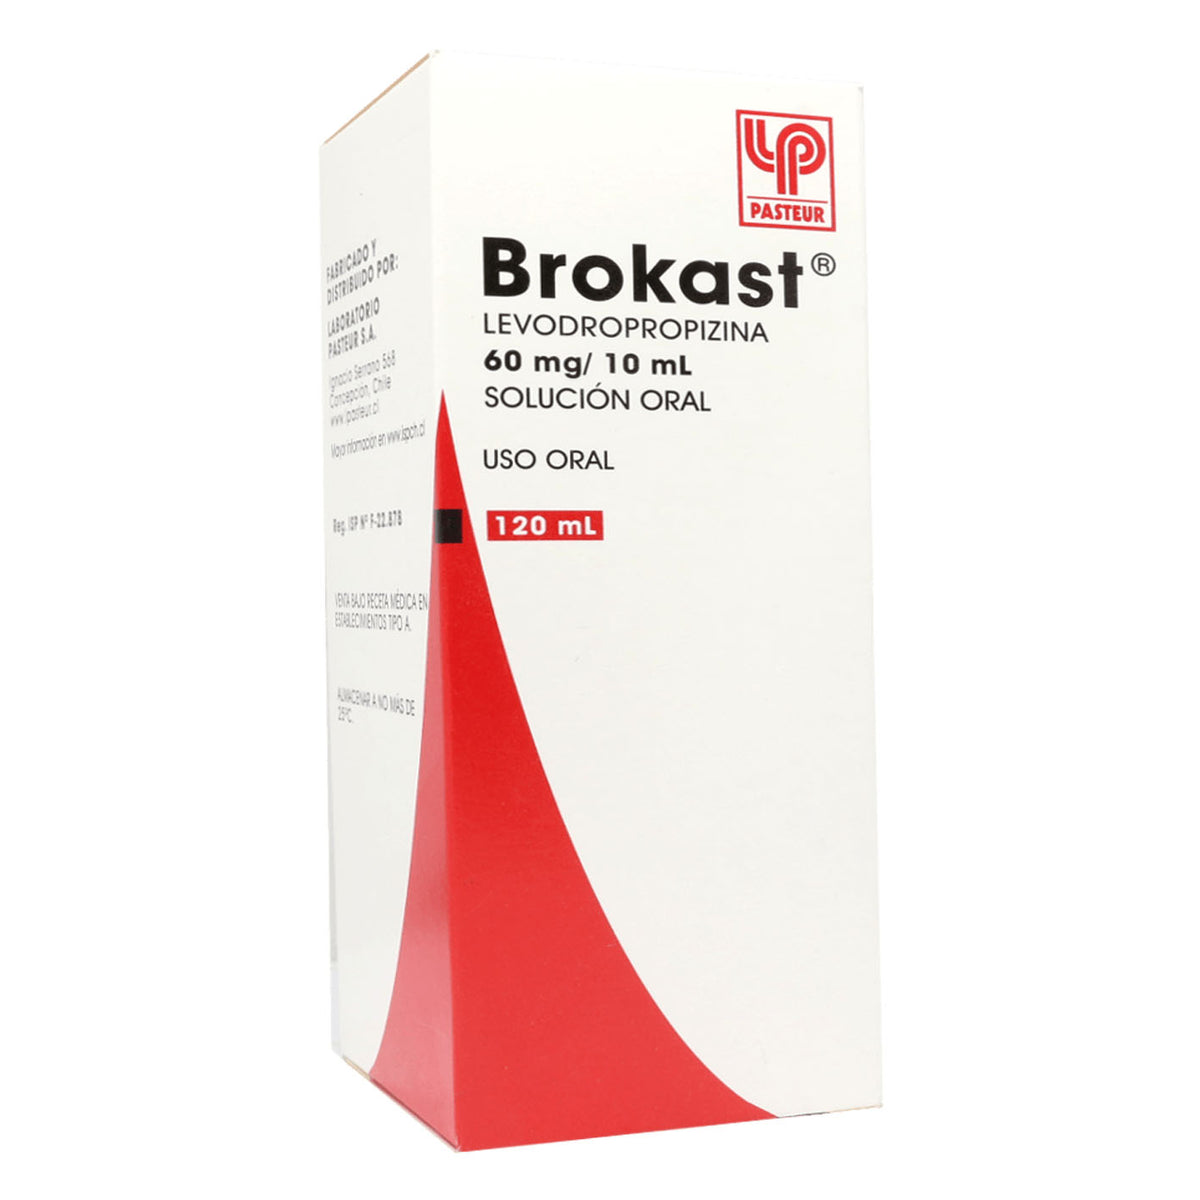 Brokast Solución Oral 60mg/10ml